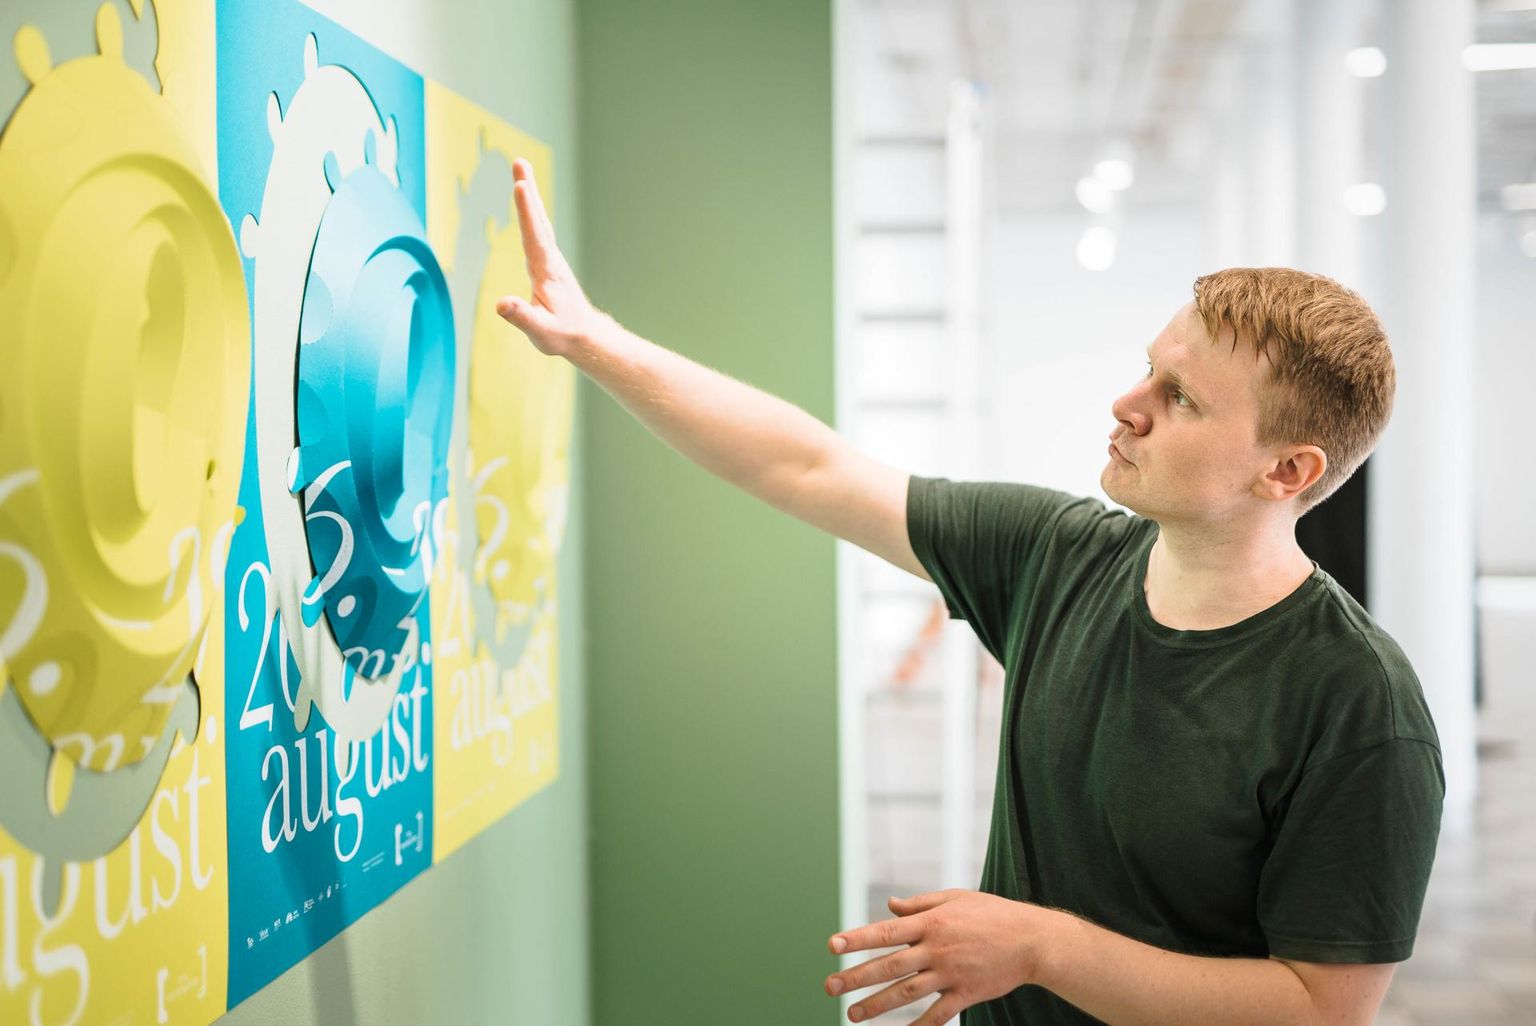 Festivali Tartu Interdistsiplinaar üks peamisi korraldajaid Jaanus Siniväli tutvustas Nooruse galeriis festivali plakatit, mis on ühtlasi paberskulptuur ning mille autorid on Anne Rudanovski ja Vahram Muradyan.